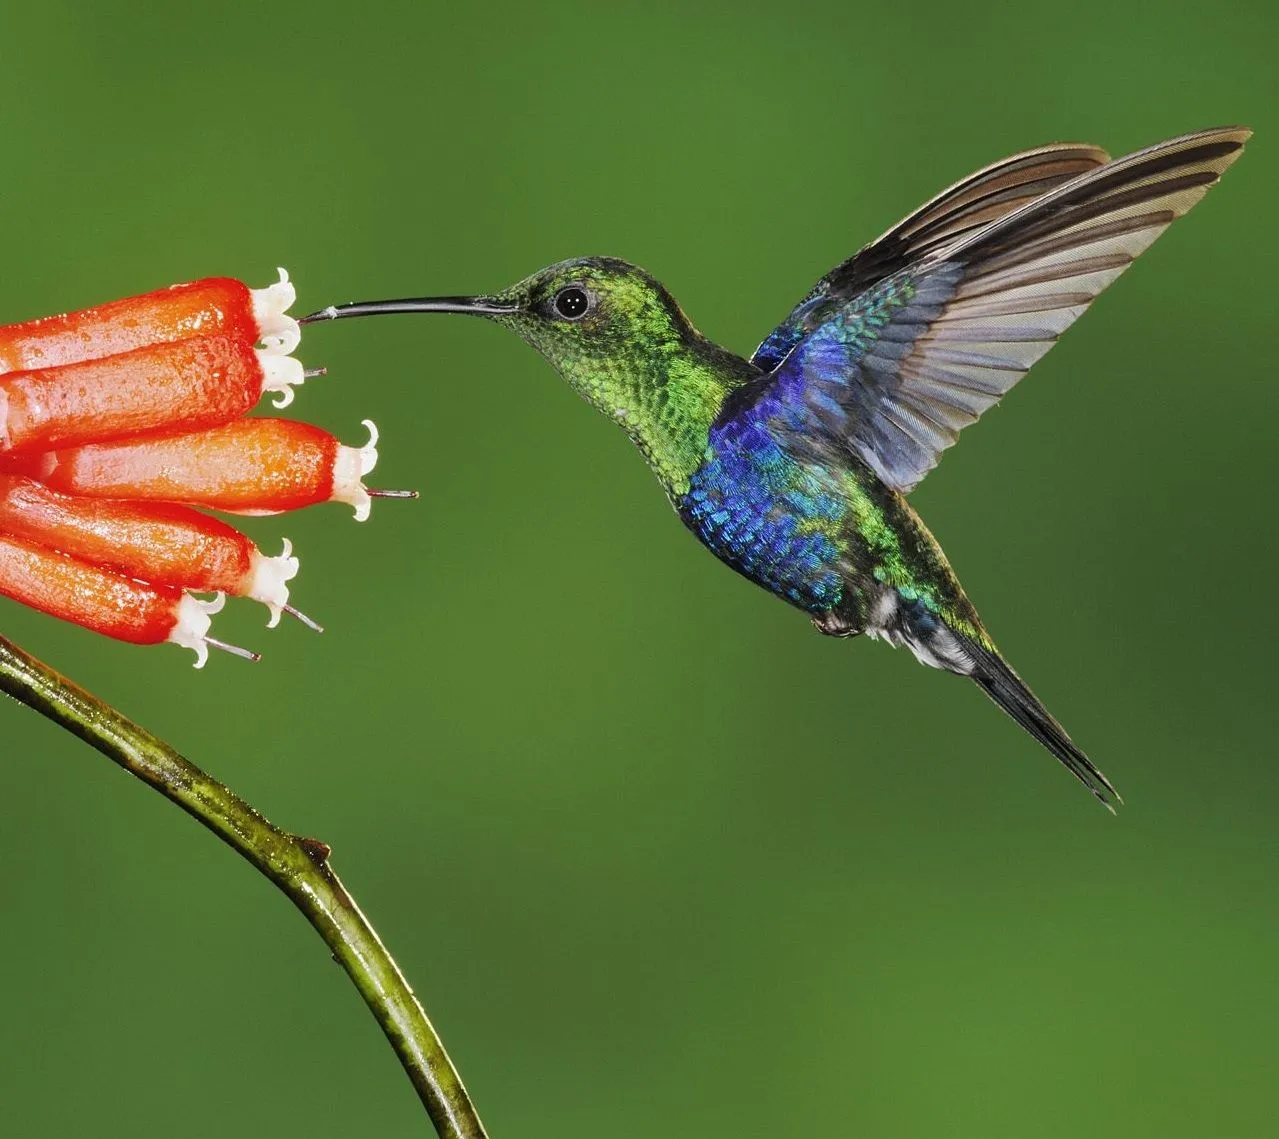 La mariposa y el colibrí.: Colibrís, insectos y murciélagos